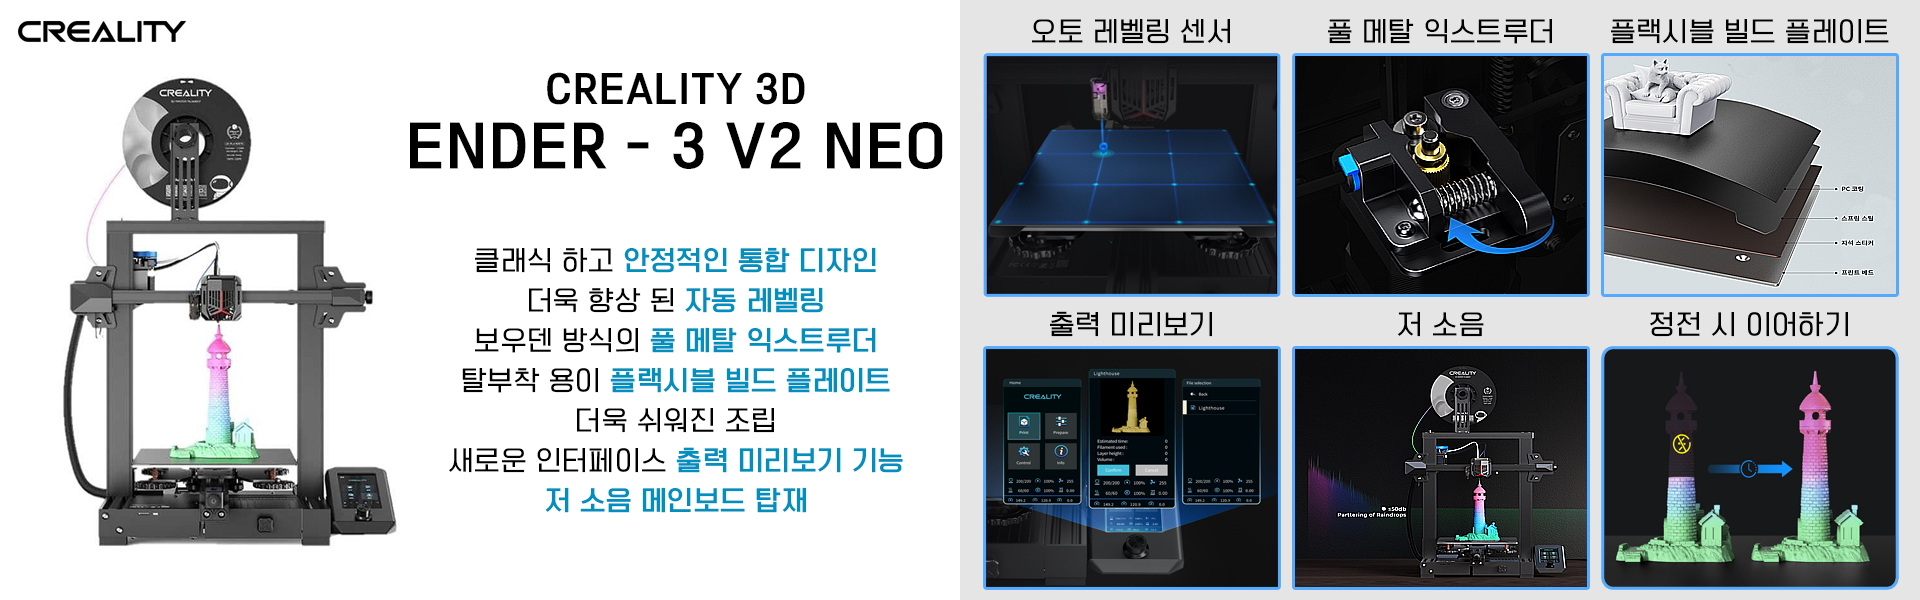 Ender - 3 V2 Neo